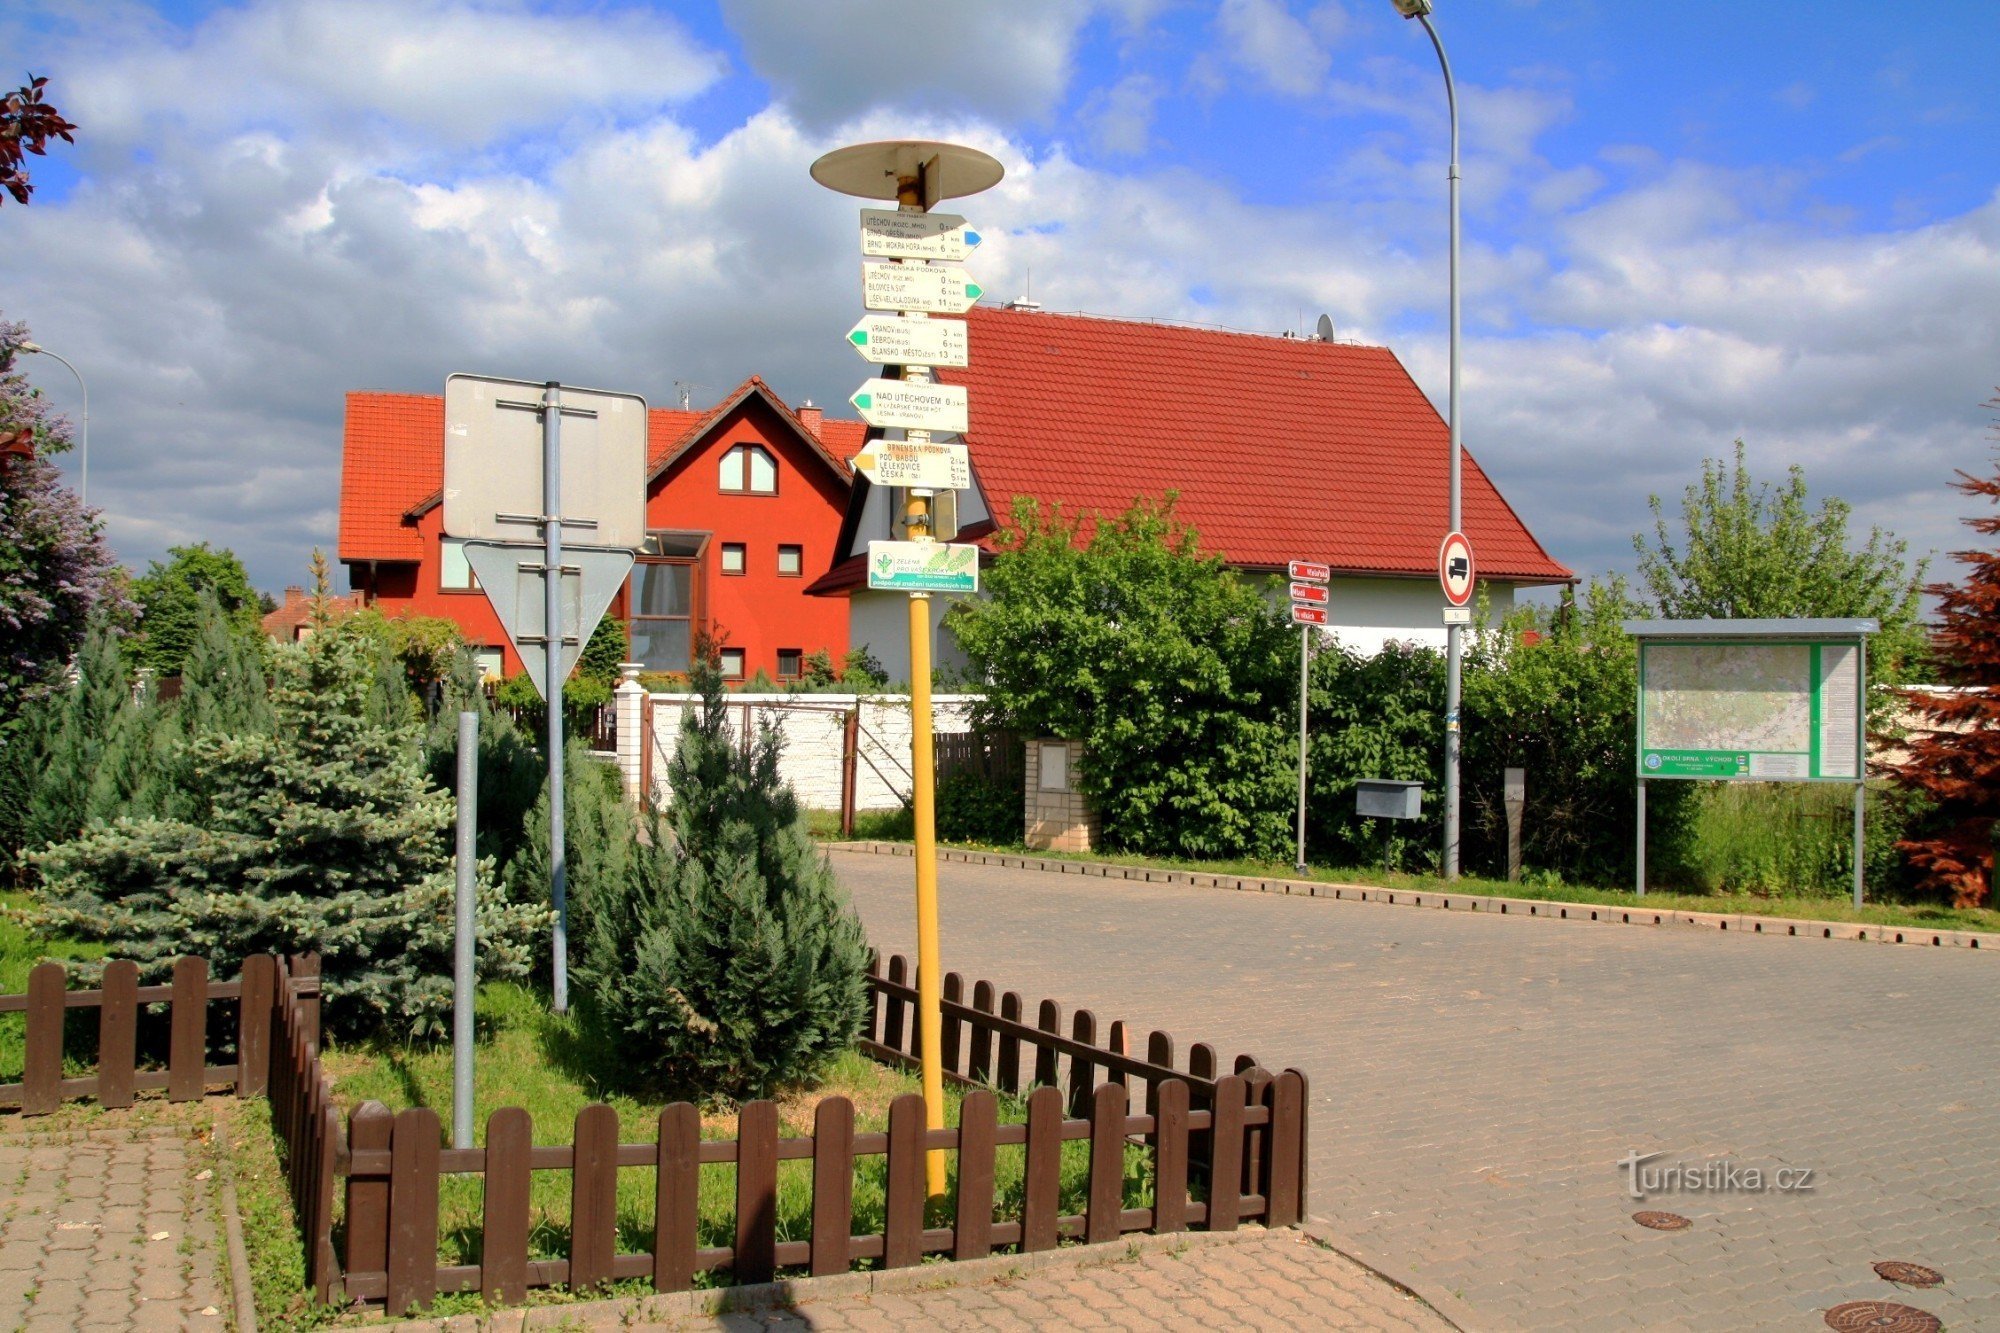 Glavni turistički putokaz u Útěchovu